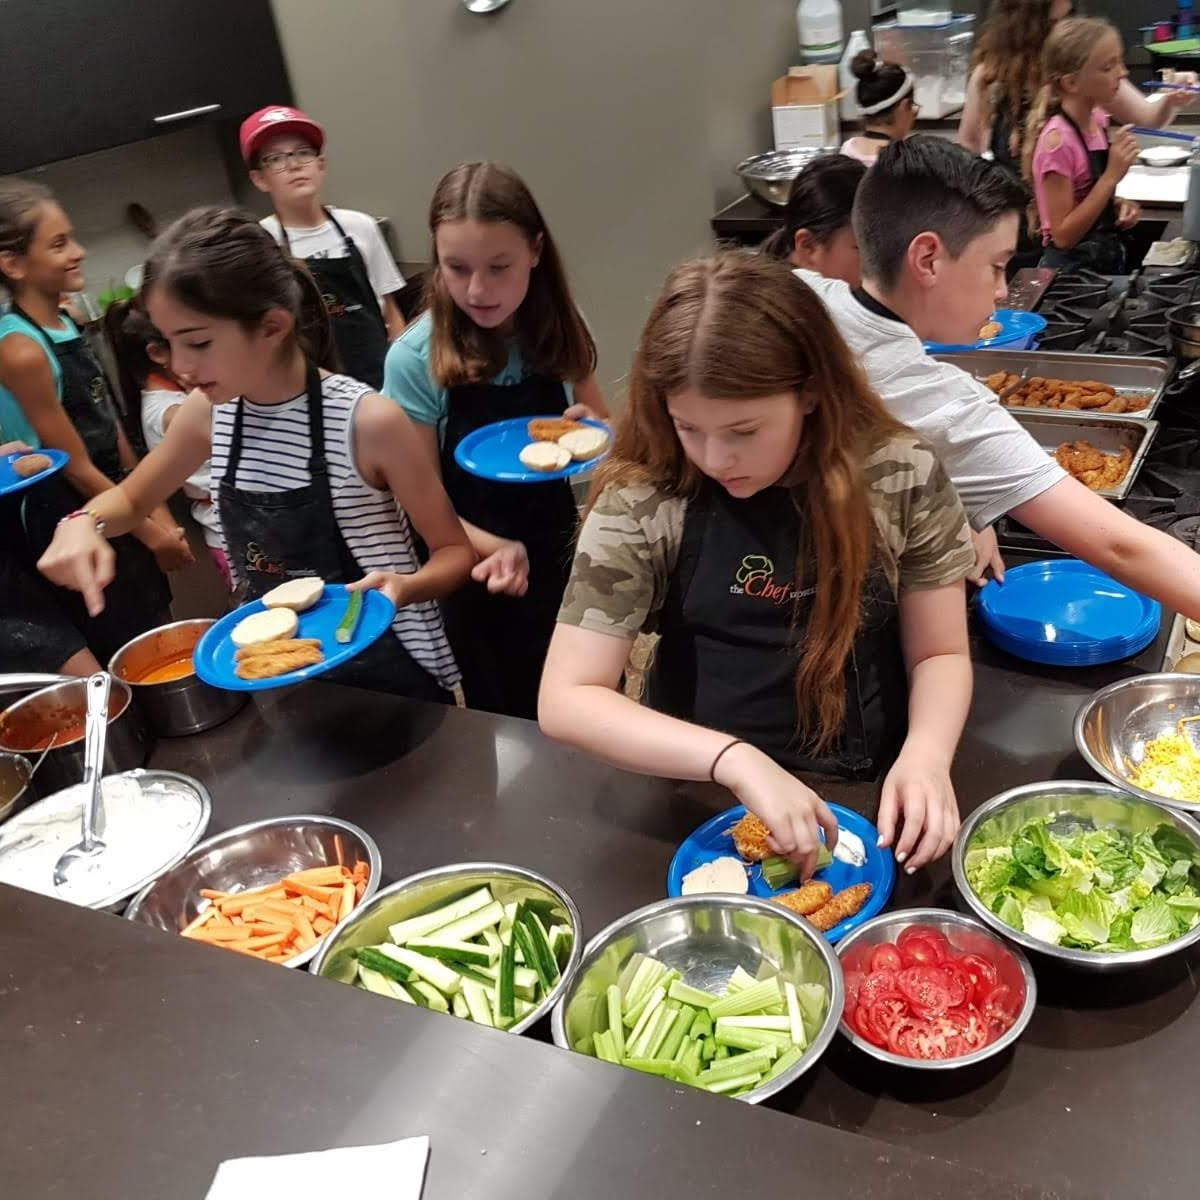 Teen Chefs Cooking School, March